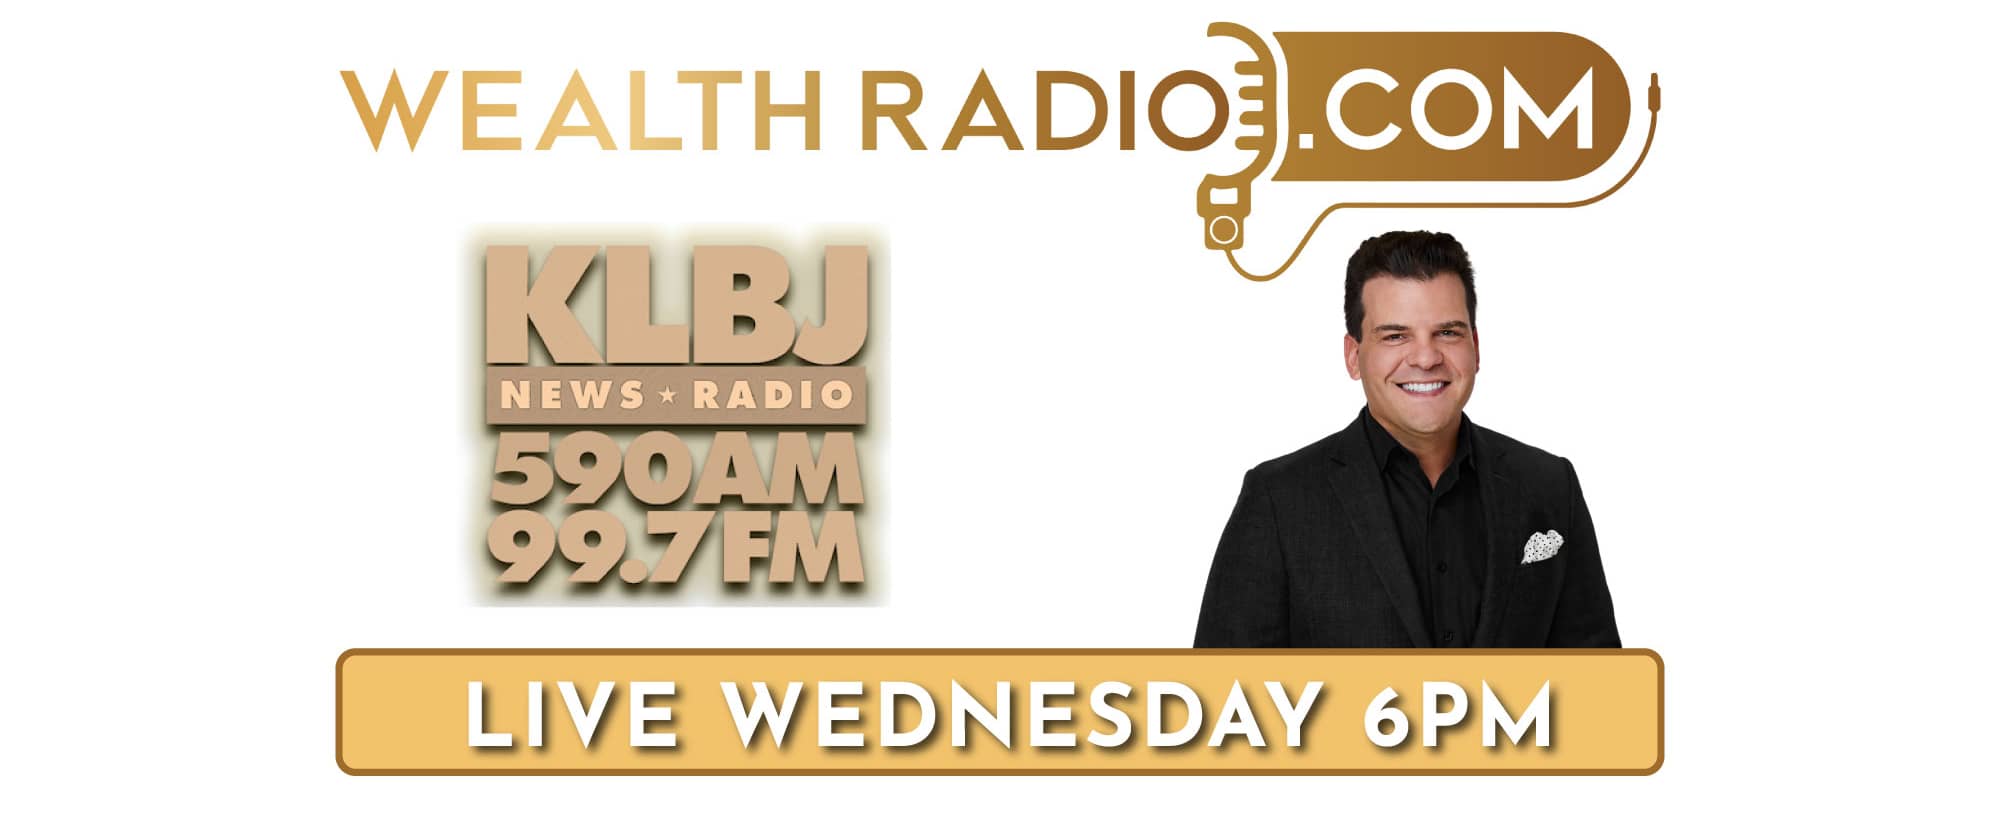 Wealth Radio KLBJ News Radio 590 AM 79.7 FM Wednesdays from 6 pm-7 pm.